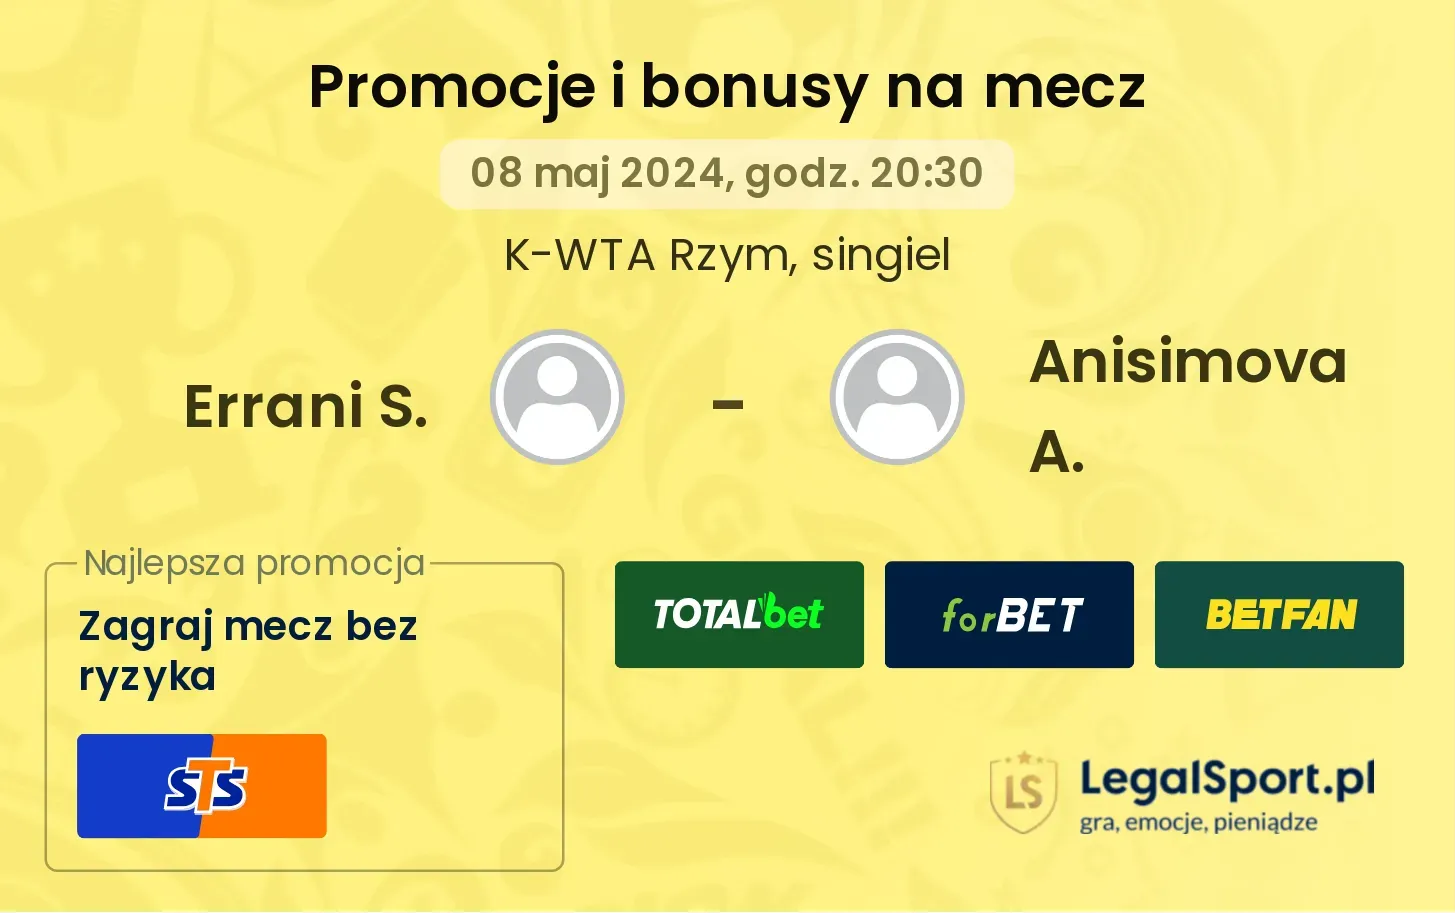 Errani S. - Anisimova A. promocje bonusy na mecz